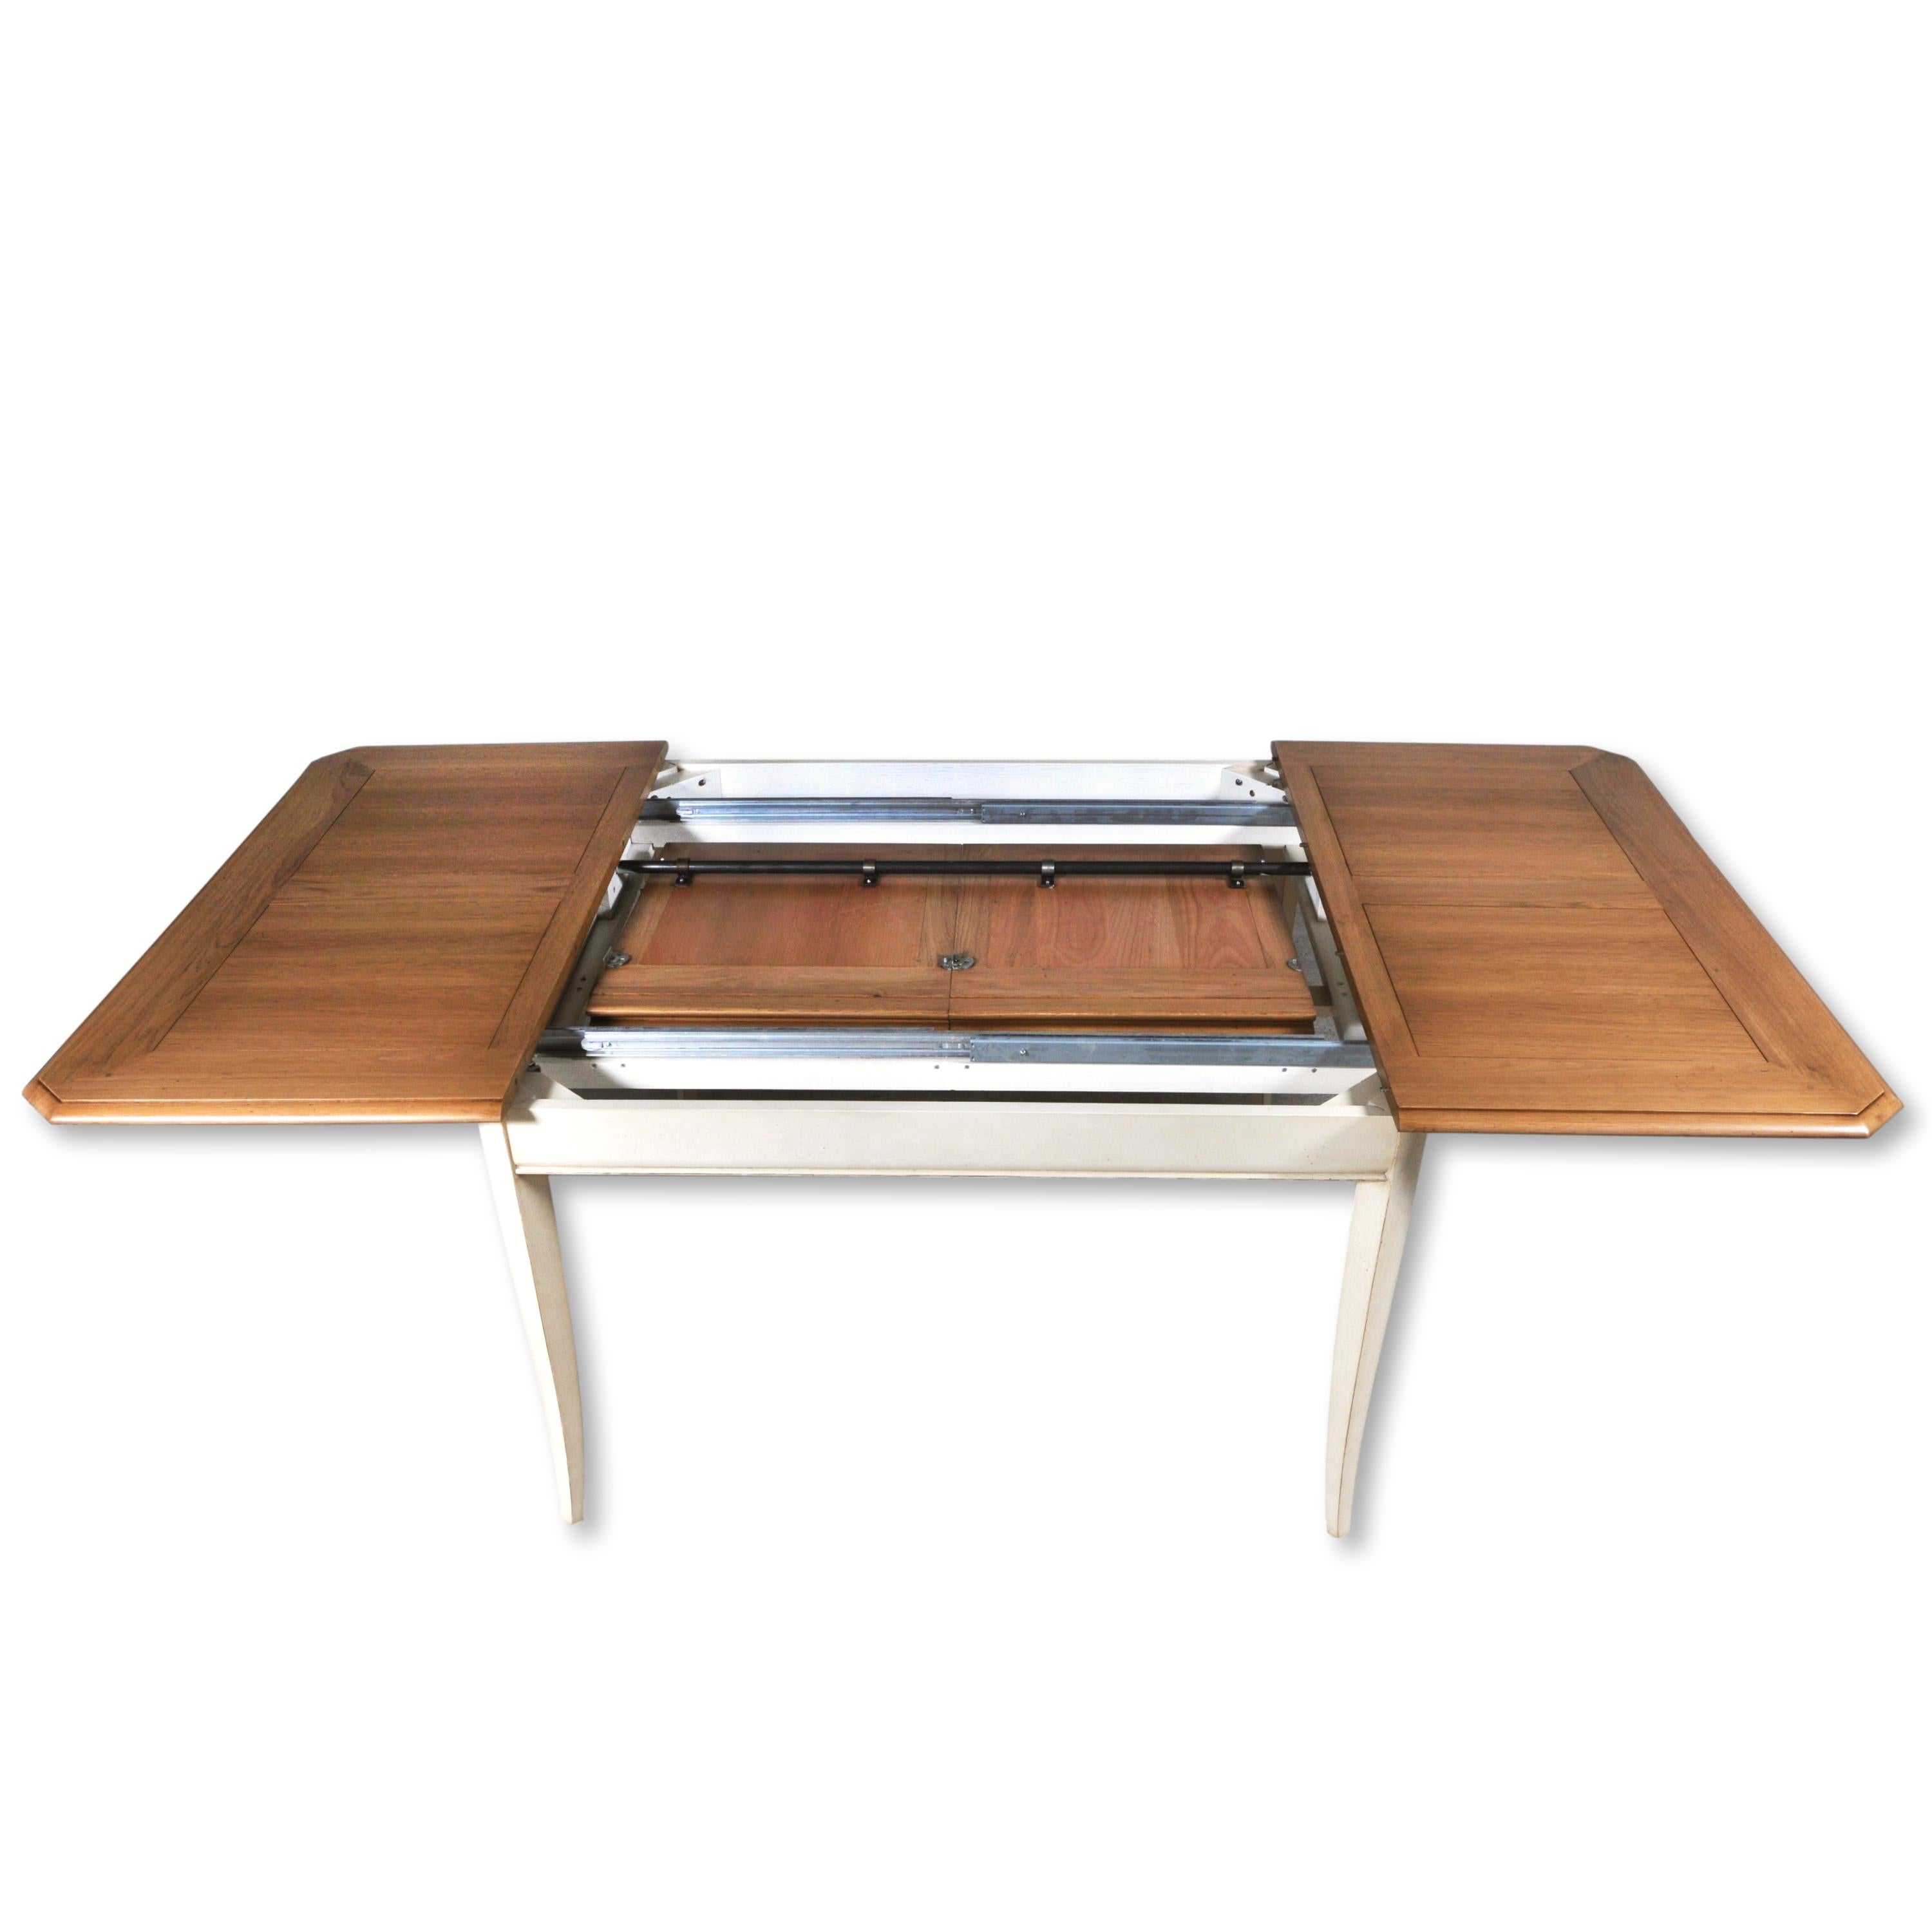 Dieser quadratische Esstisch ist typisch für den französischen Landhausstil und kombiniert gebeiztes französisches Eichenholz mit hellen Farben für die Füße und den Gürtel.

Es integriert 2 gefaltete Verlängerungen von je 15,75